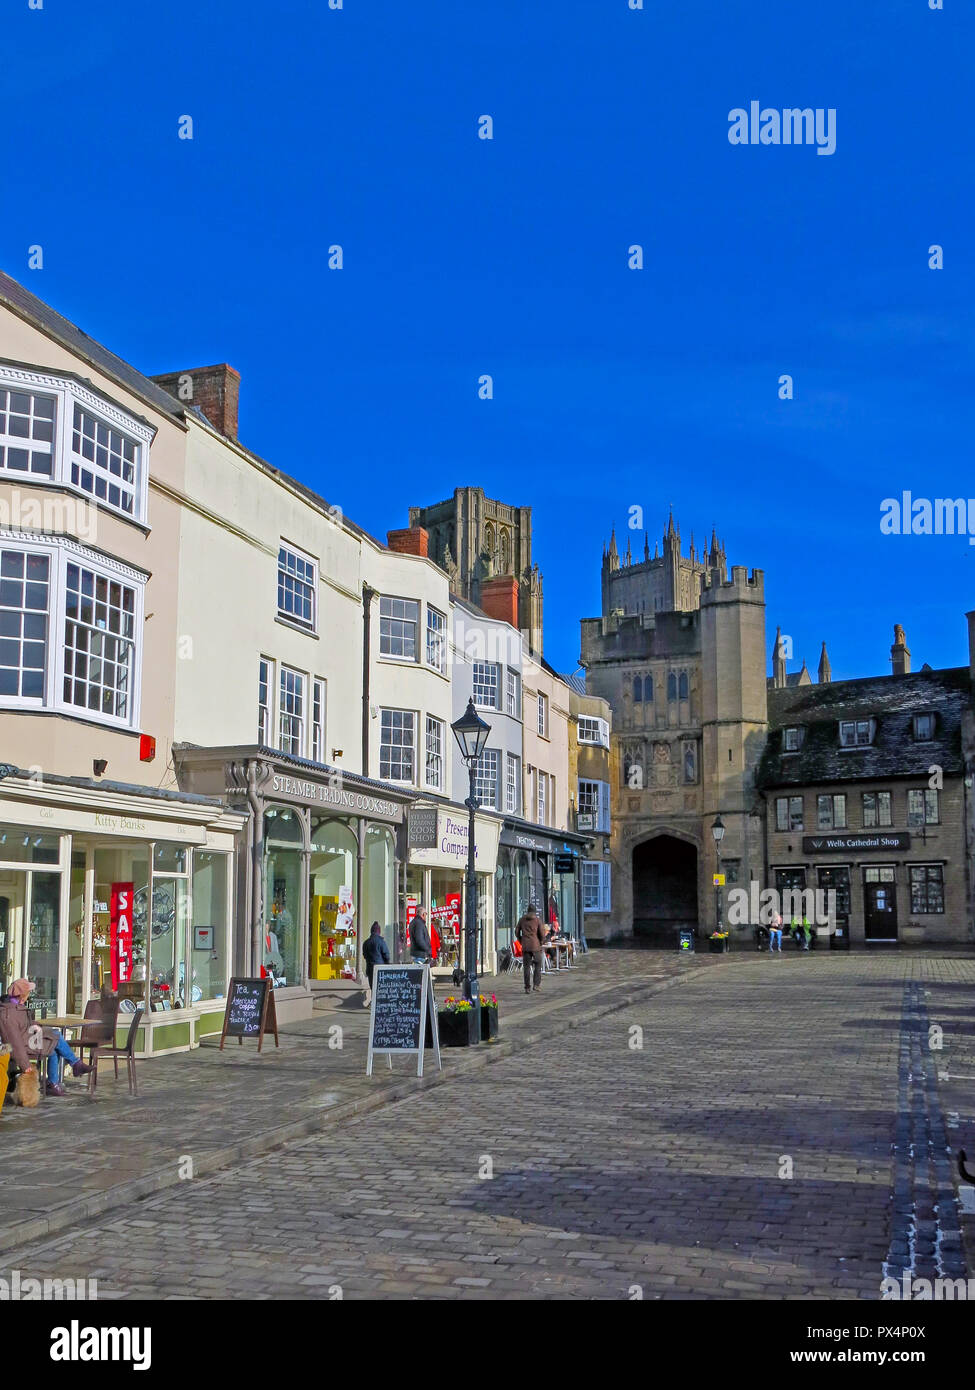 Georgische archiecture und Pennyless Veranda im historischen Markt von Wells, Somerset, England, Großbritannien Stockfoto